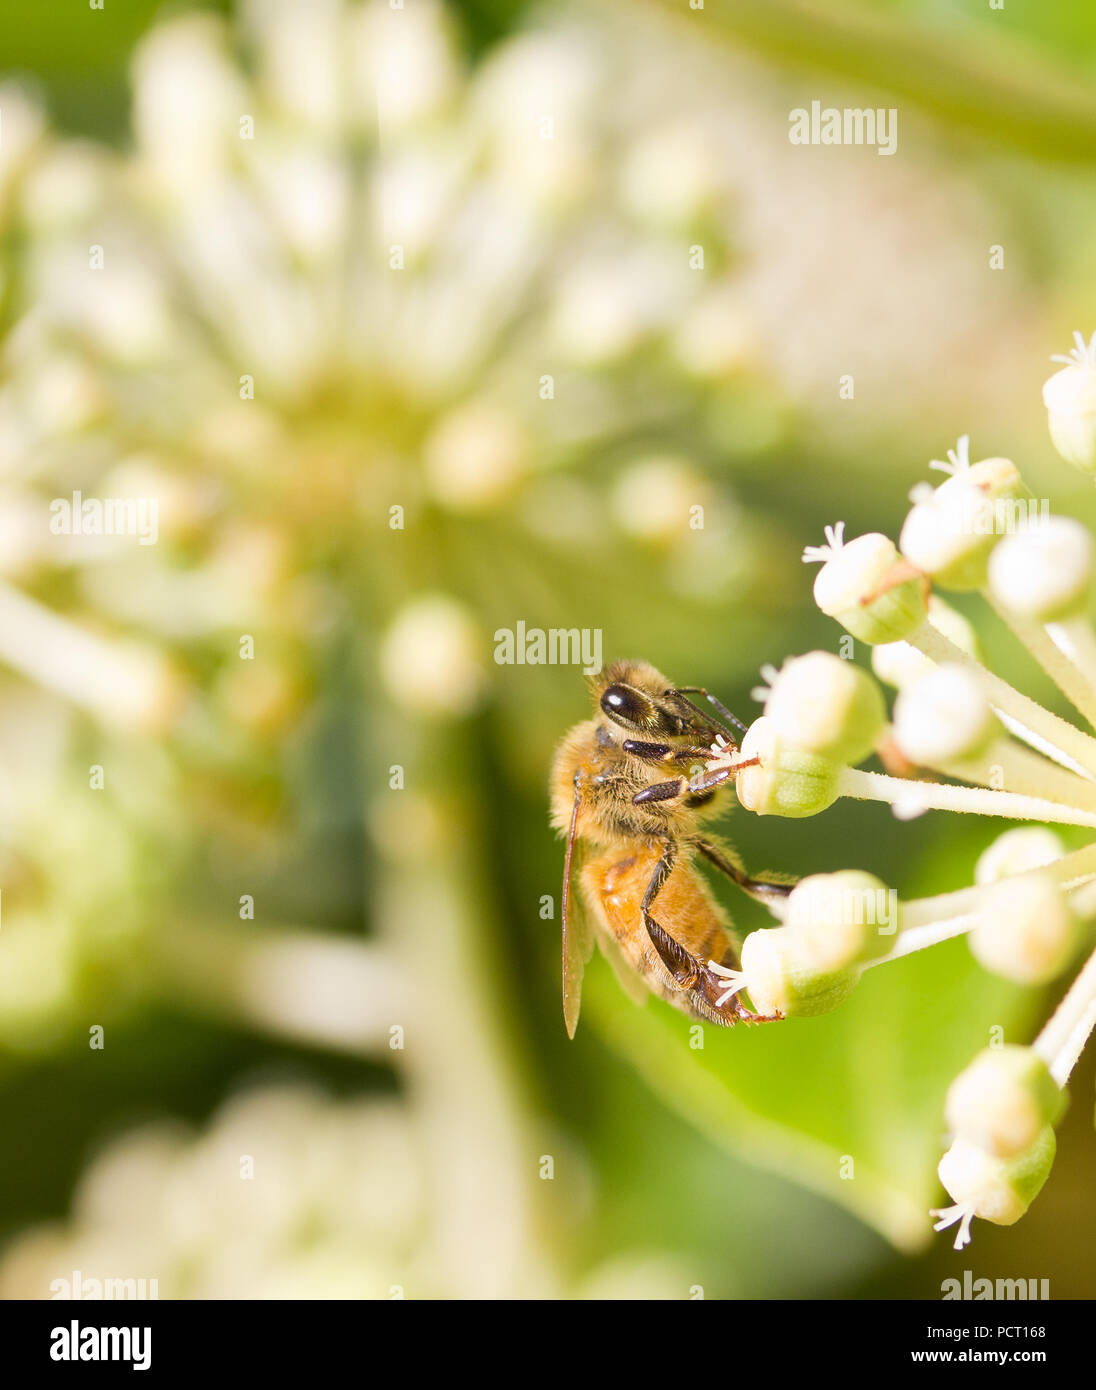 La collecte du pollen d'Abeille sur fleur blanche avec fond vert photo floue Banque D'Images